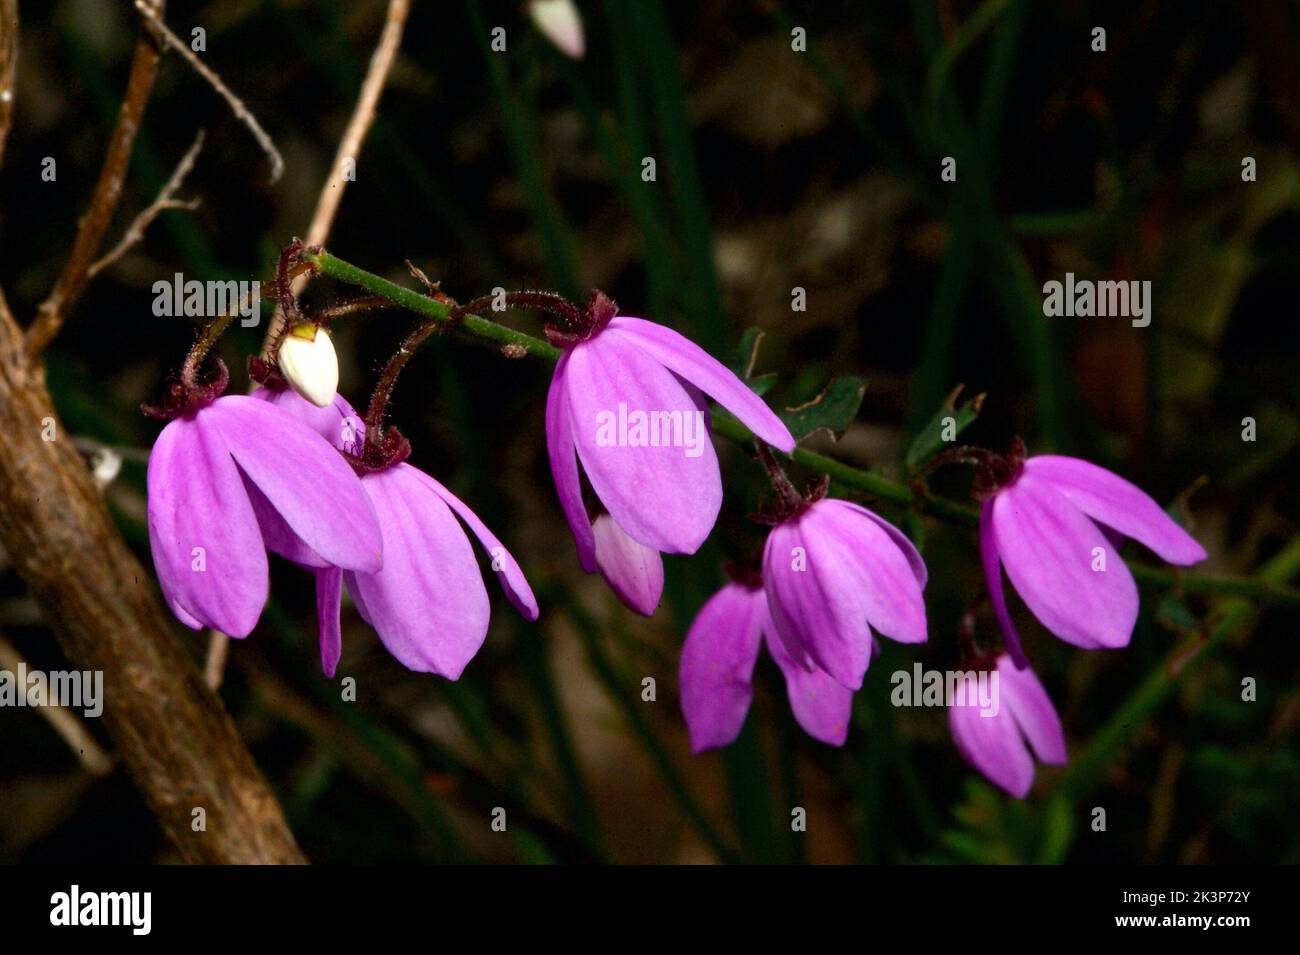 Les fleurs de Susan à yeux noirs (Tetratheca Ciliata) poussent toujours dans les touffes, les fleurs pendent, donc les yeux noirs sont vraiment difficiles à photographier! Banque D'Images